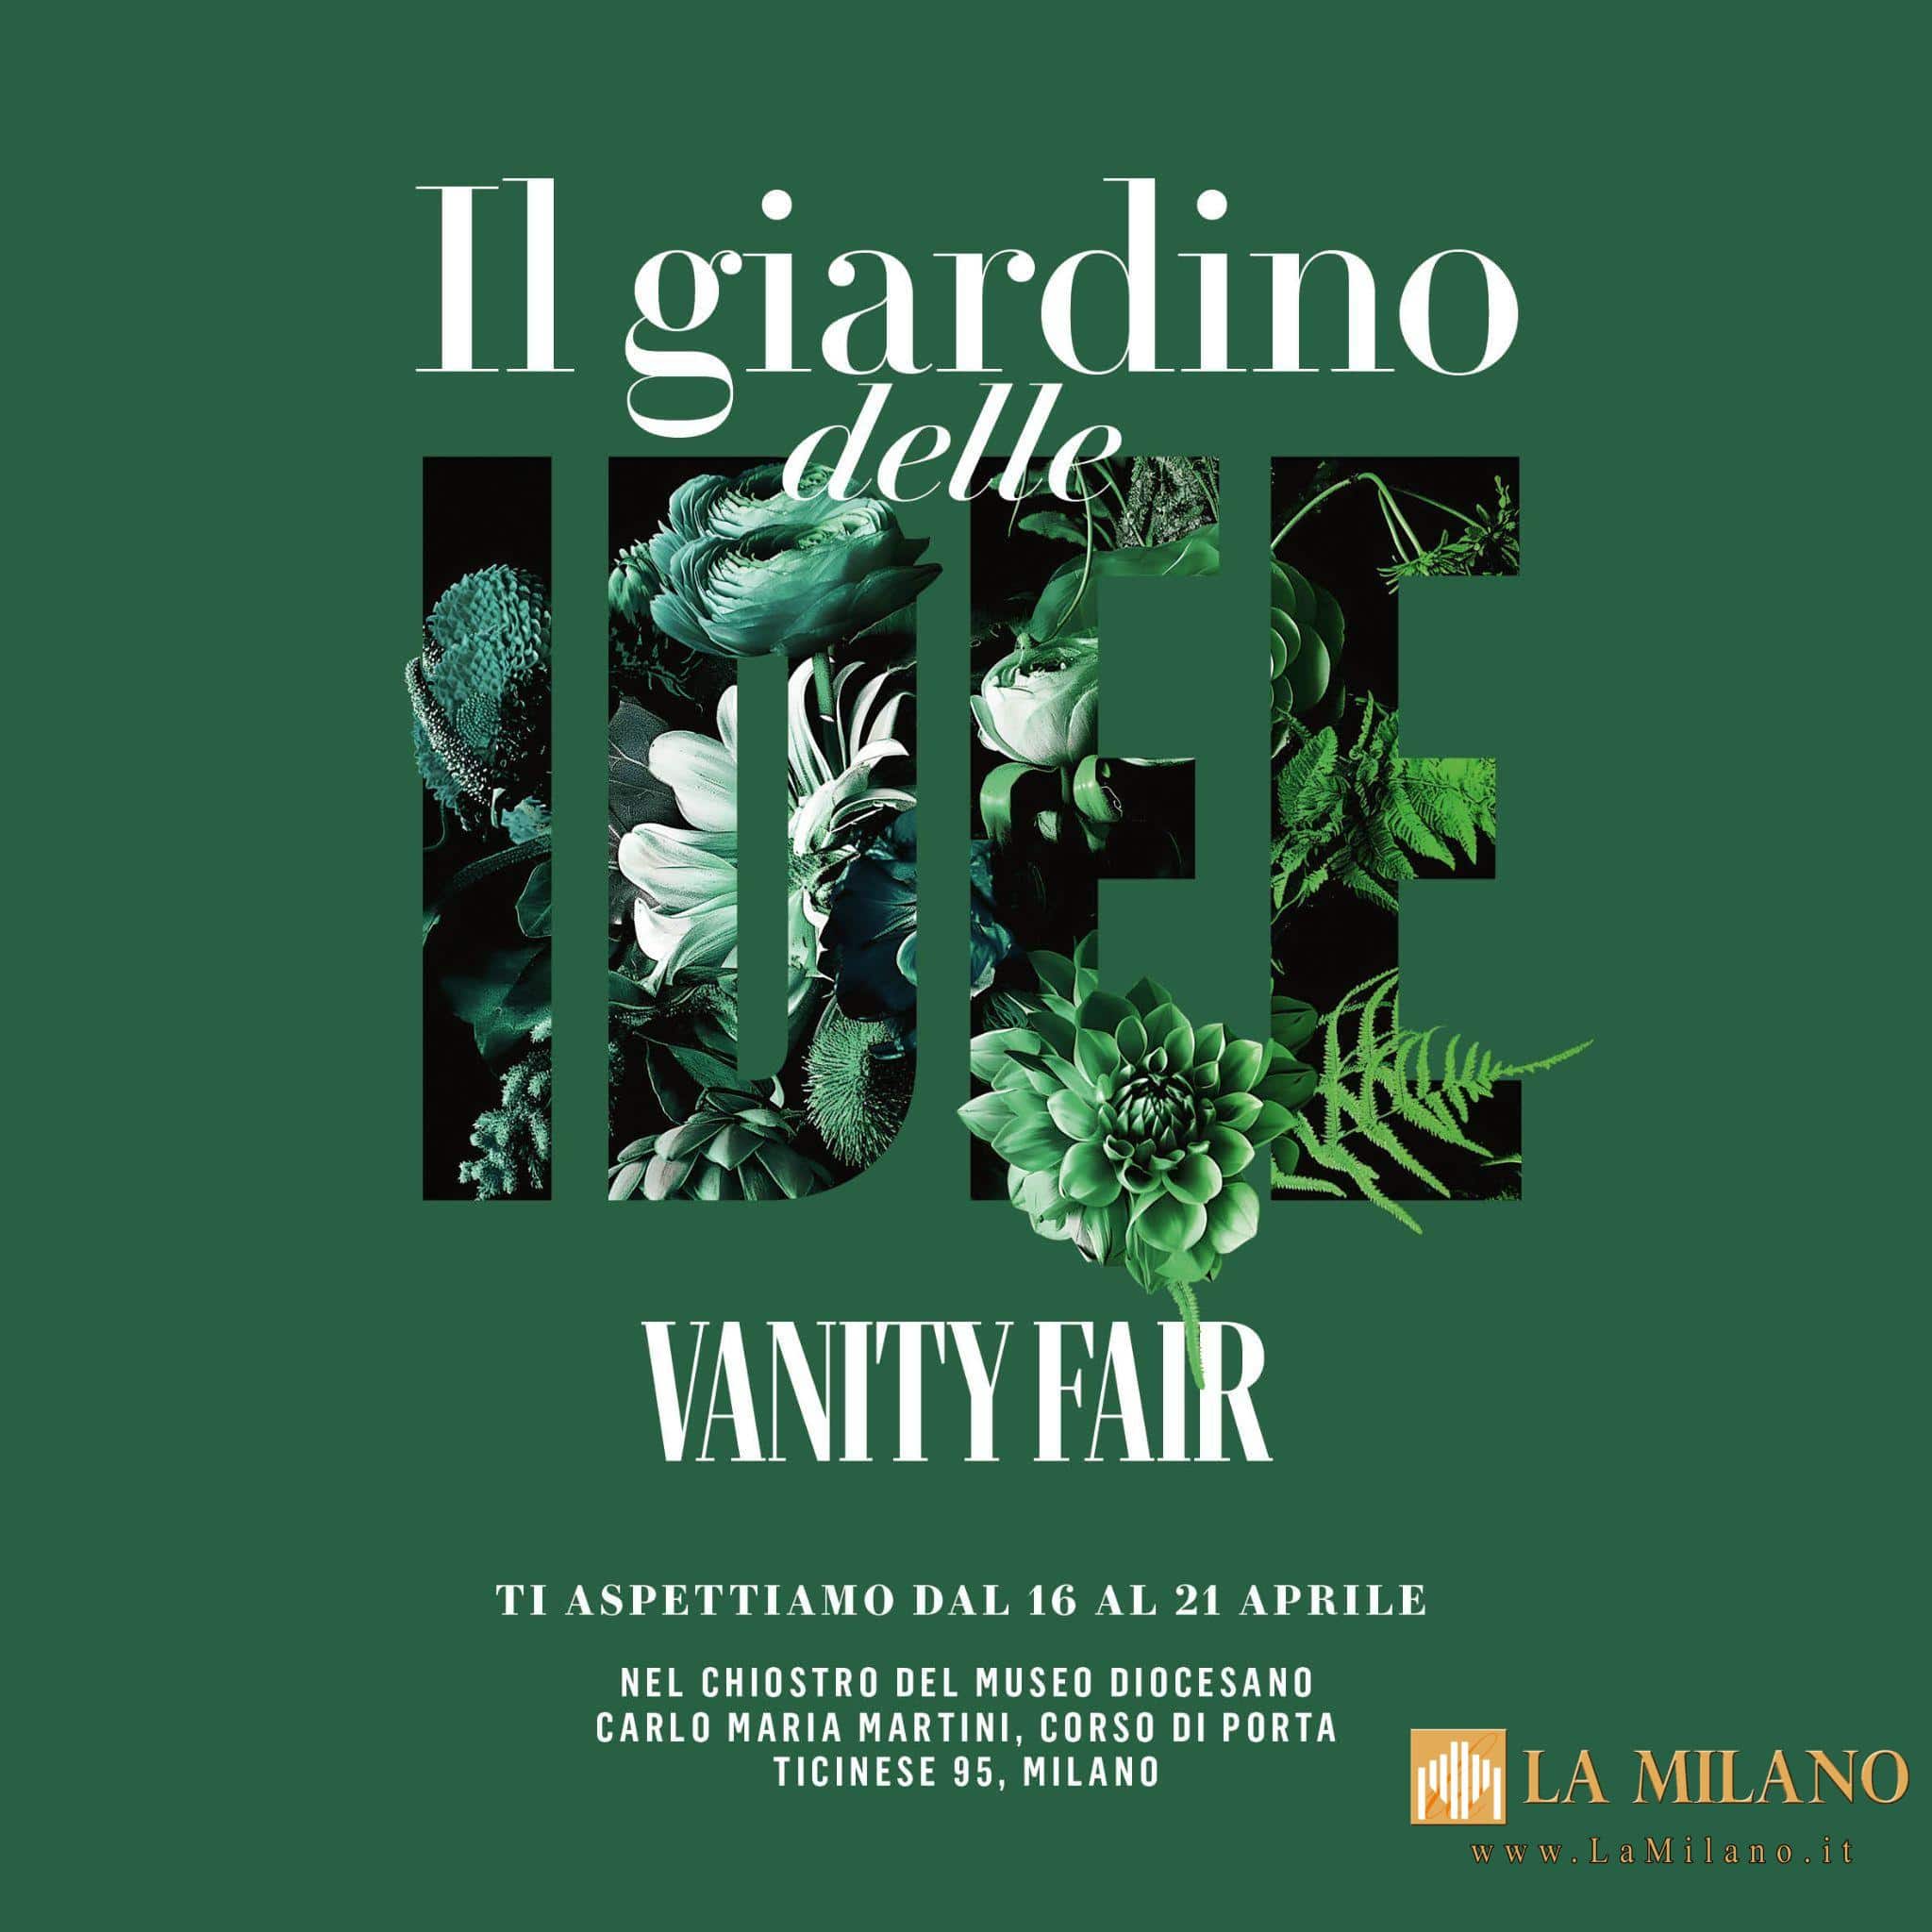 Milano Design Week. Vanity Fair inaugura "Il Giardino delle Idee": la prima mostra/laboratorio gratuita, dal 16 al 21 aprile.